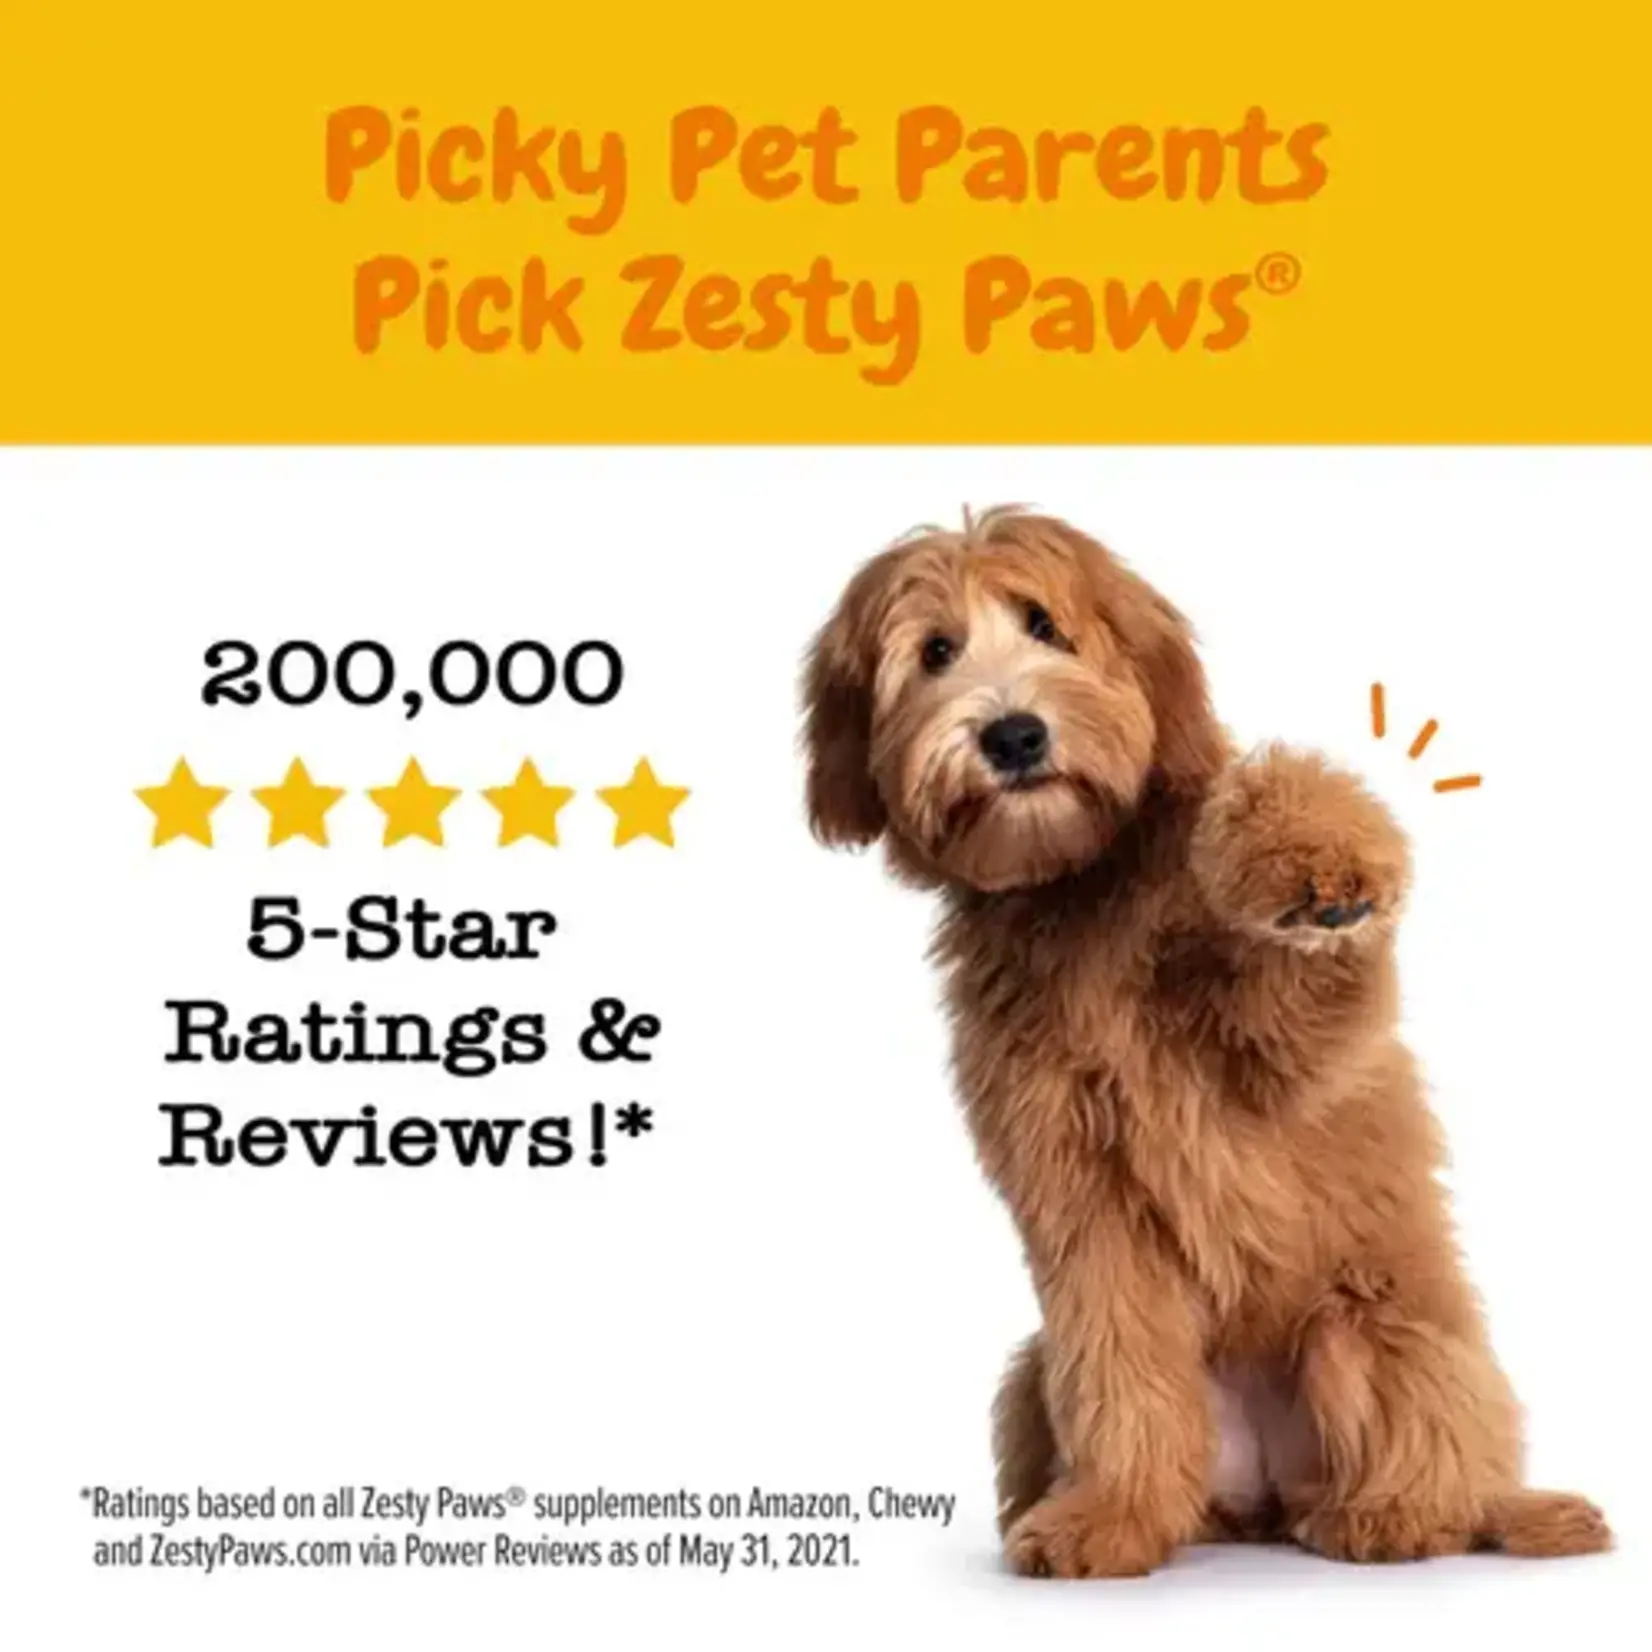 Zesty Paws Aller-Immune Bites for Dogs